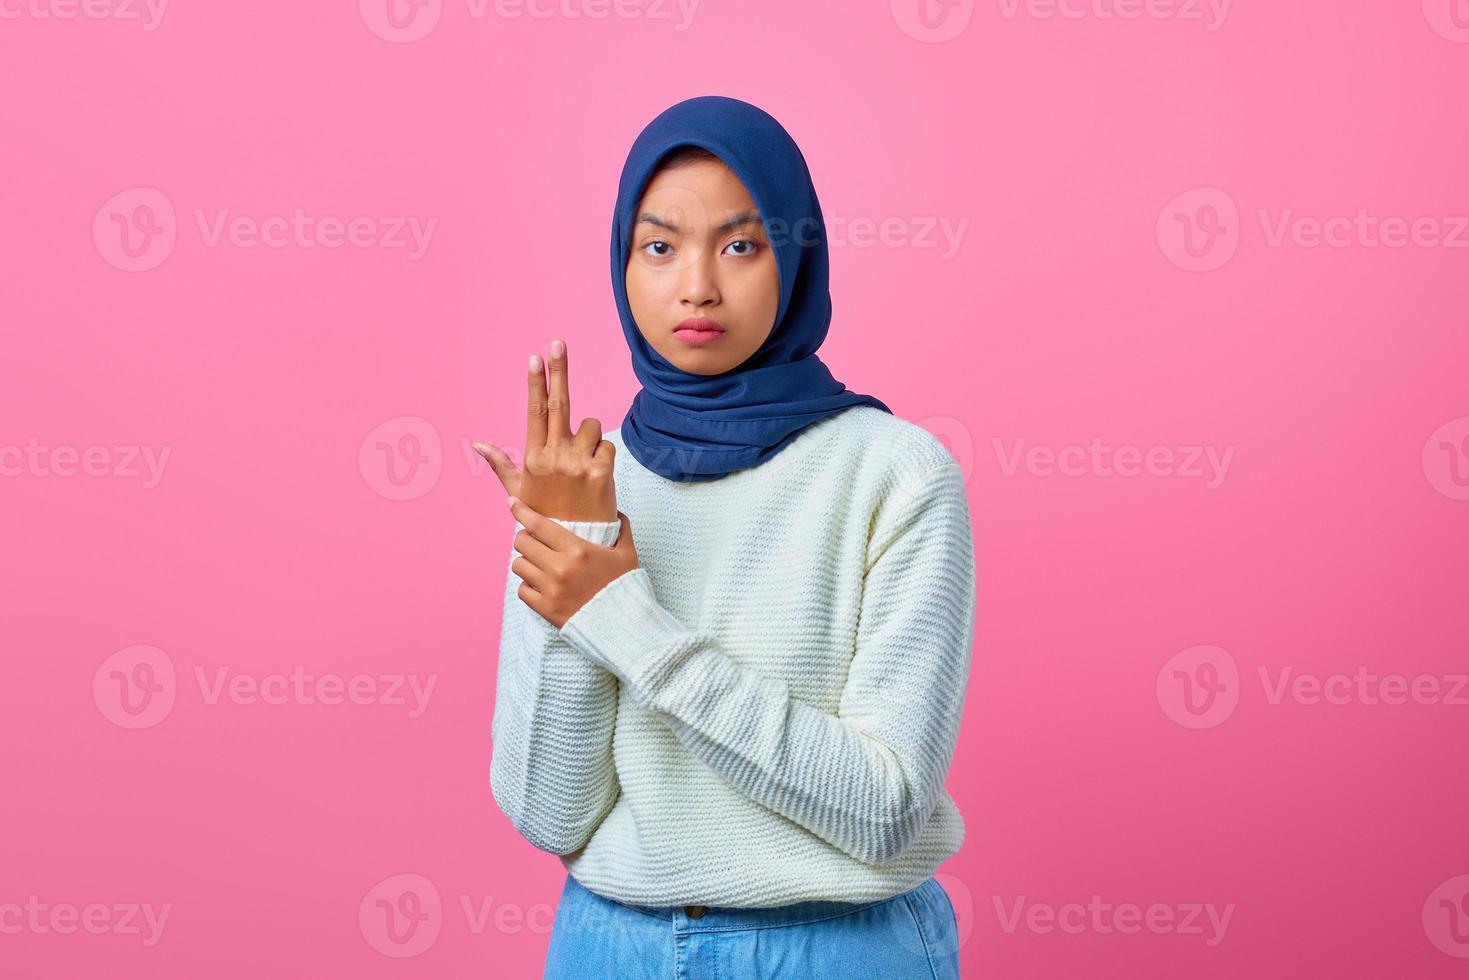 Porträt einer jungen asiatischen Frau, die eine symbolische Waffe mit Handgeste hält foto